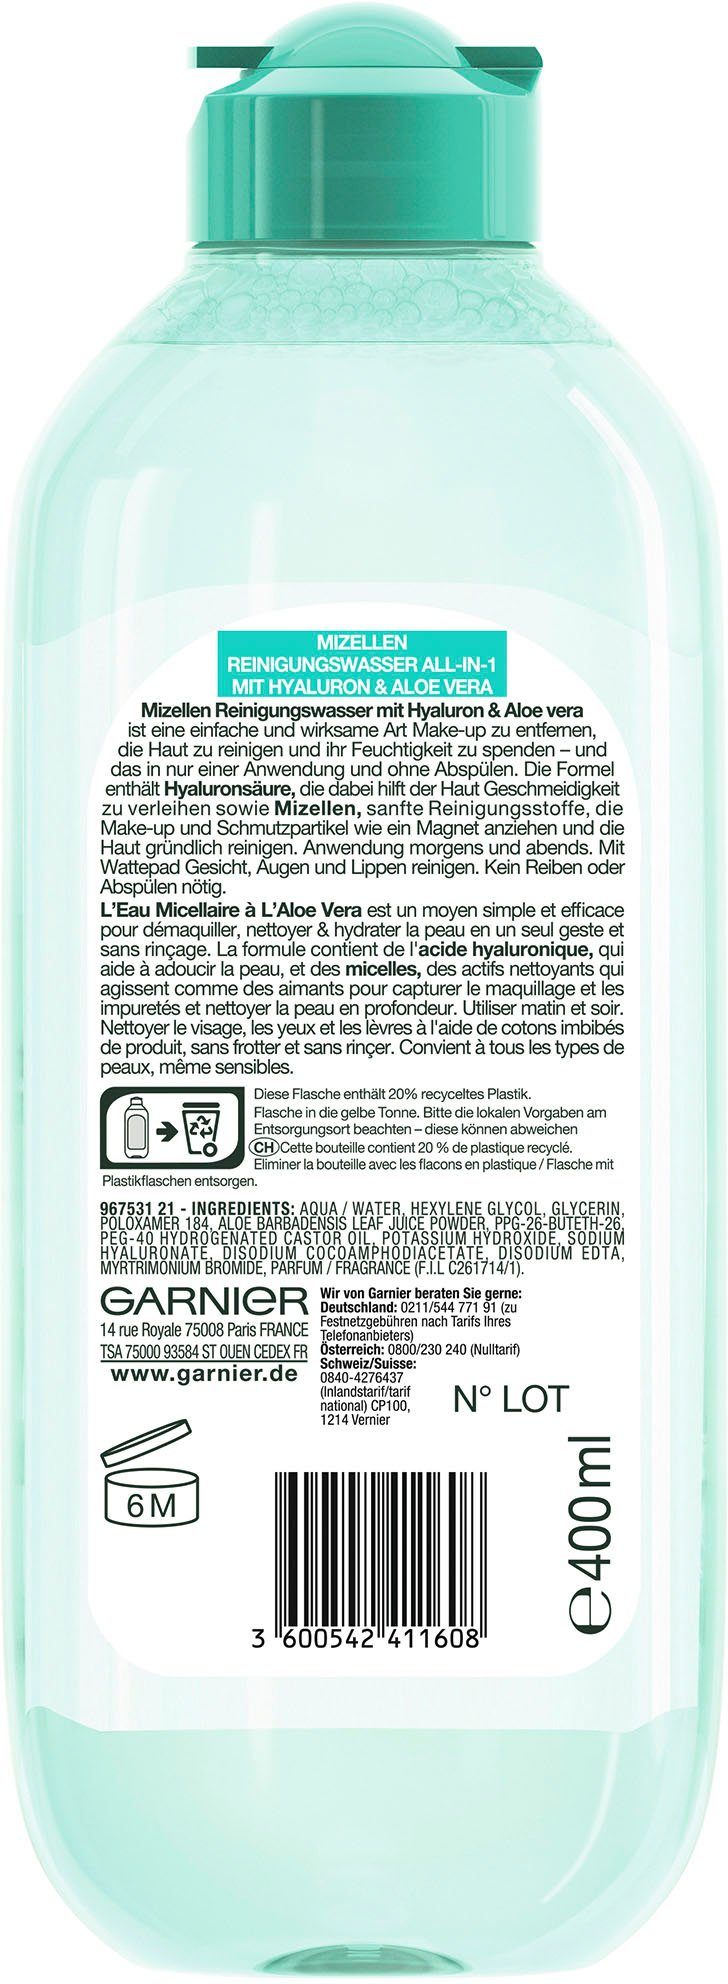 All-in-1 GARNIER Reinigungswasser Gesichtswasser Mizellen